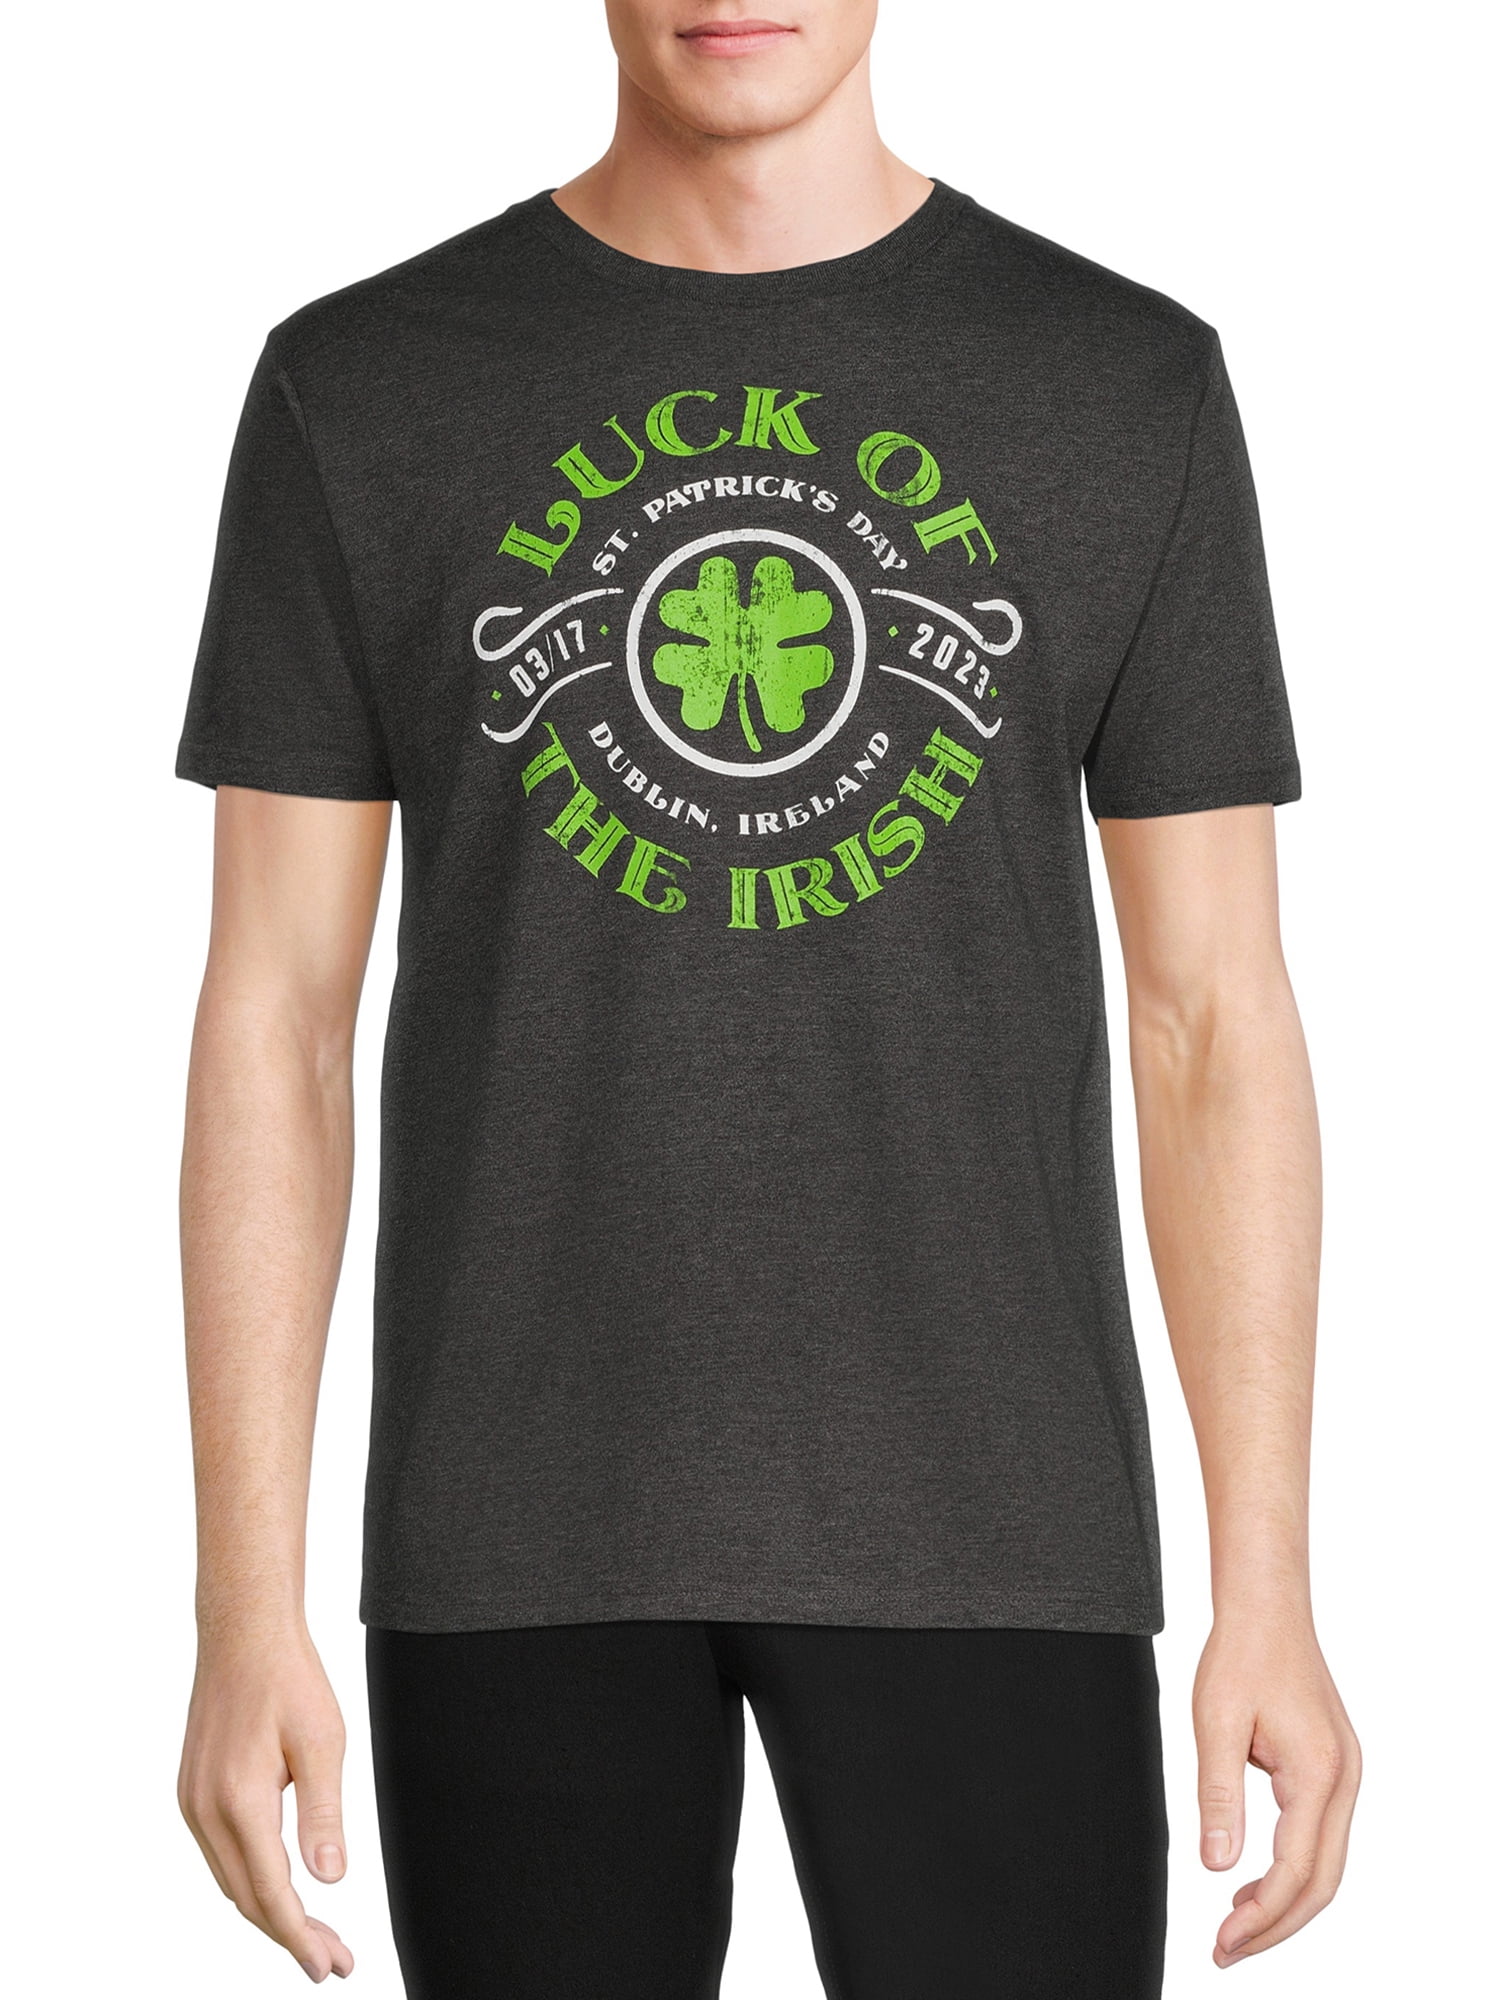 Saint Patrick’s Day Men’s Luck of the Irish T-Shirt